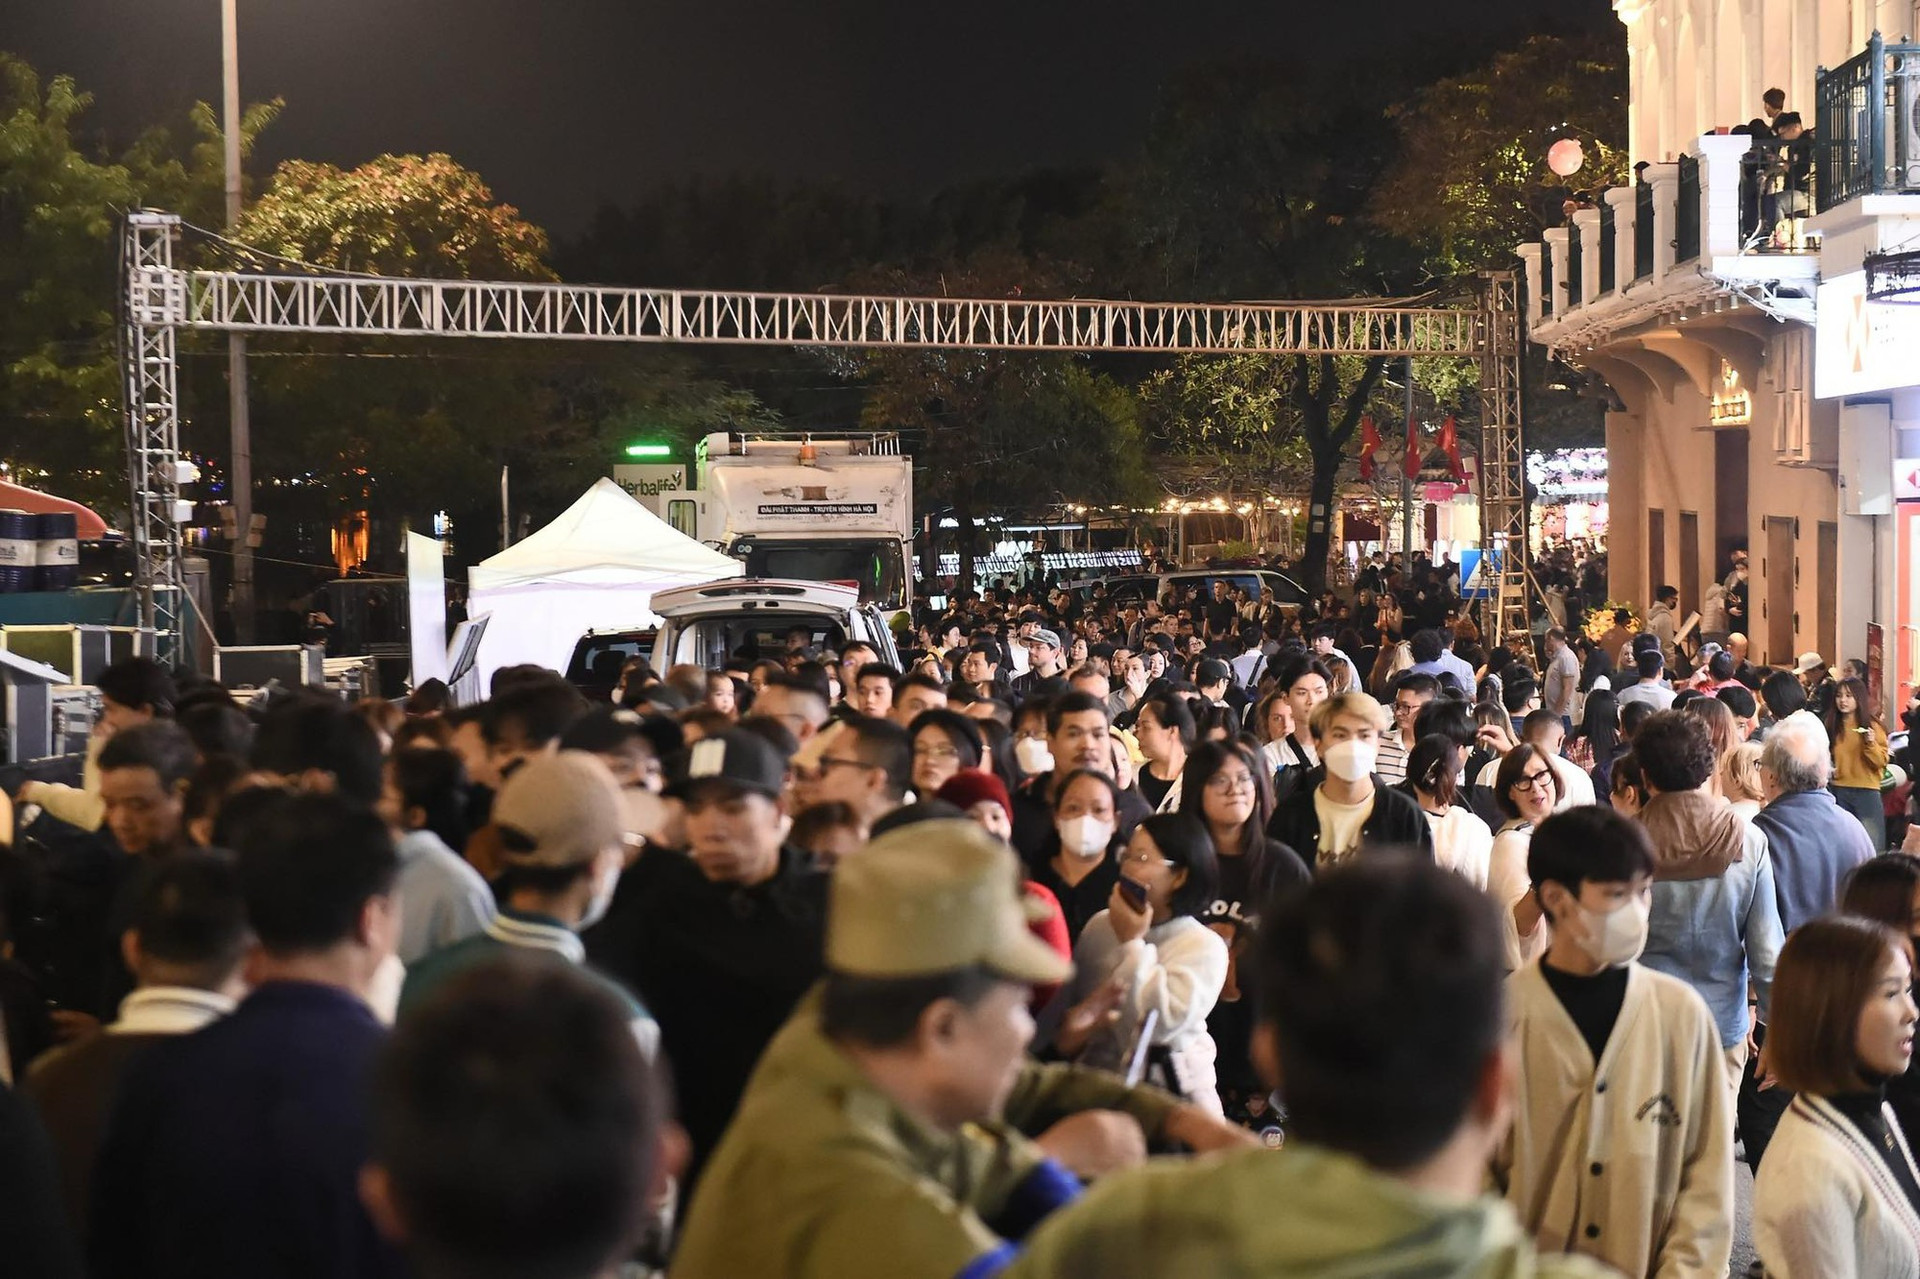 Hình ảnh nhìn đã thấy ngộp thở: Hàng nghìn người nhích từng chút ở phố đi bộ Hà Nội chờ giao thừa- Ảnh 8.